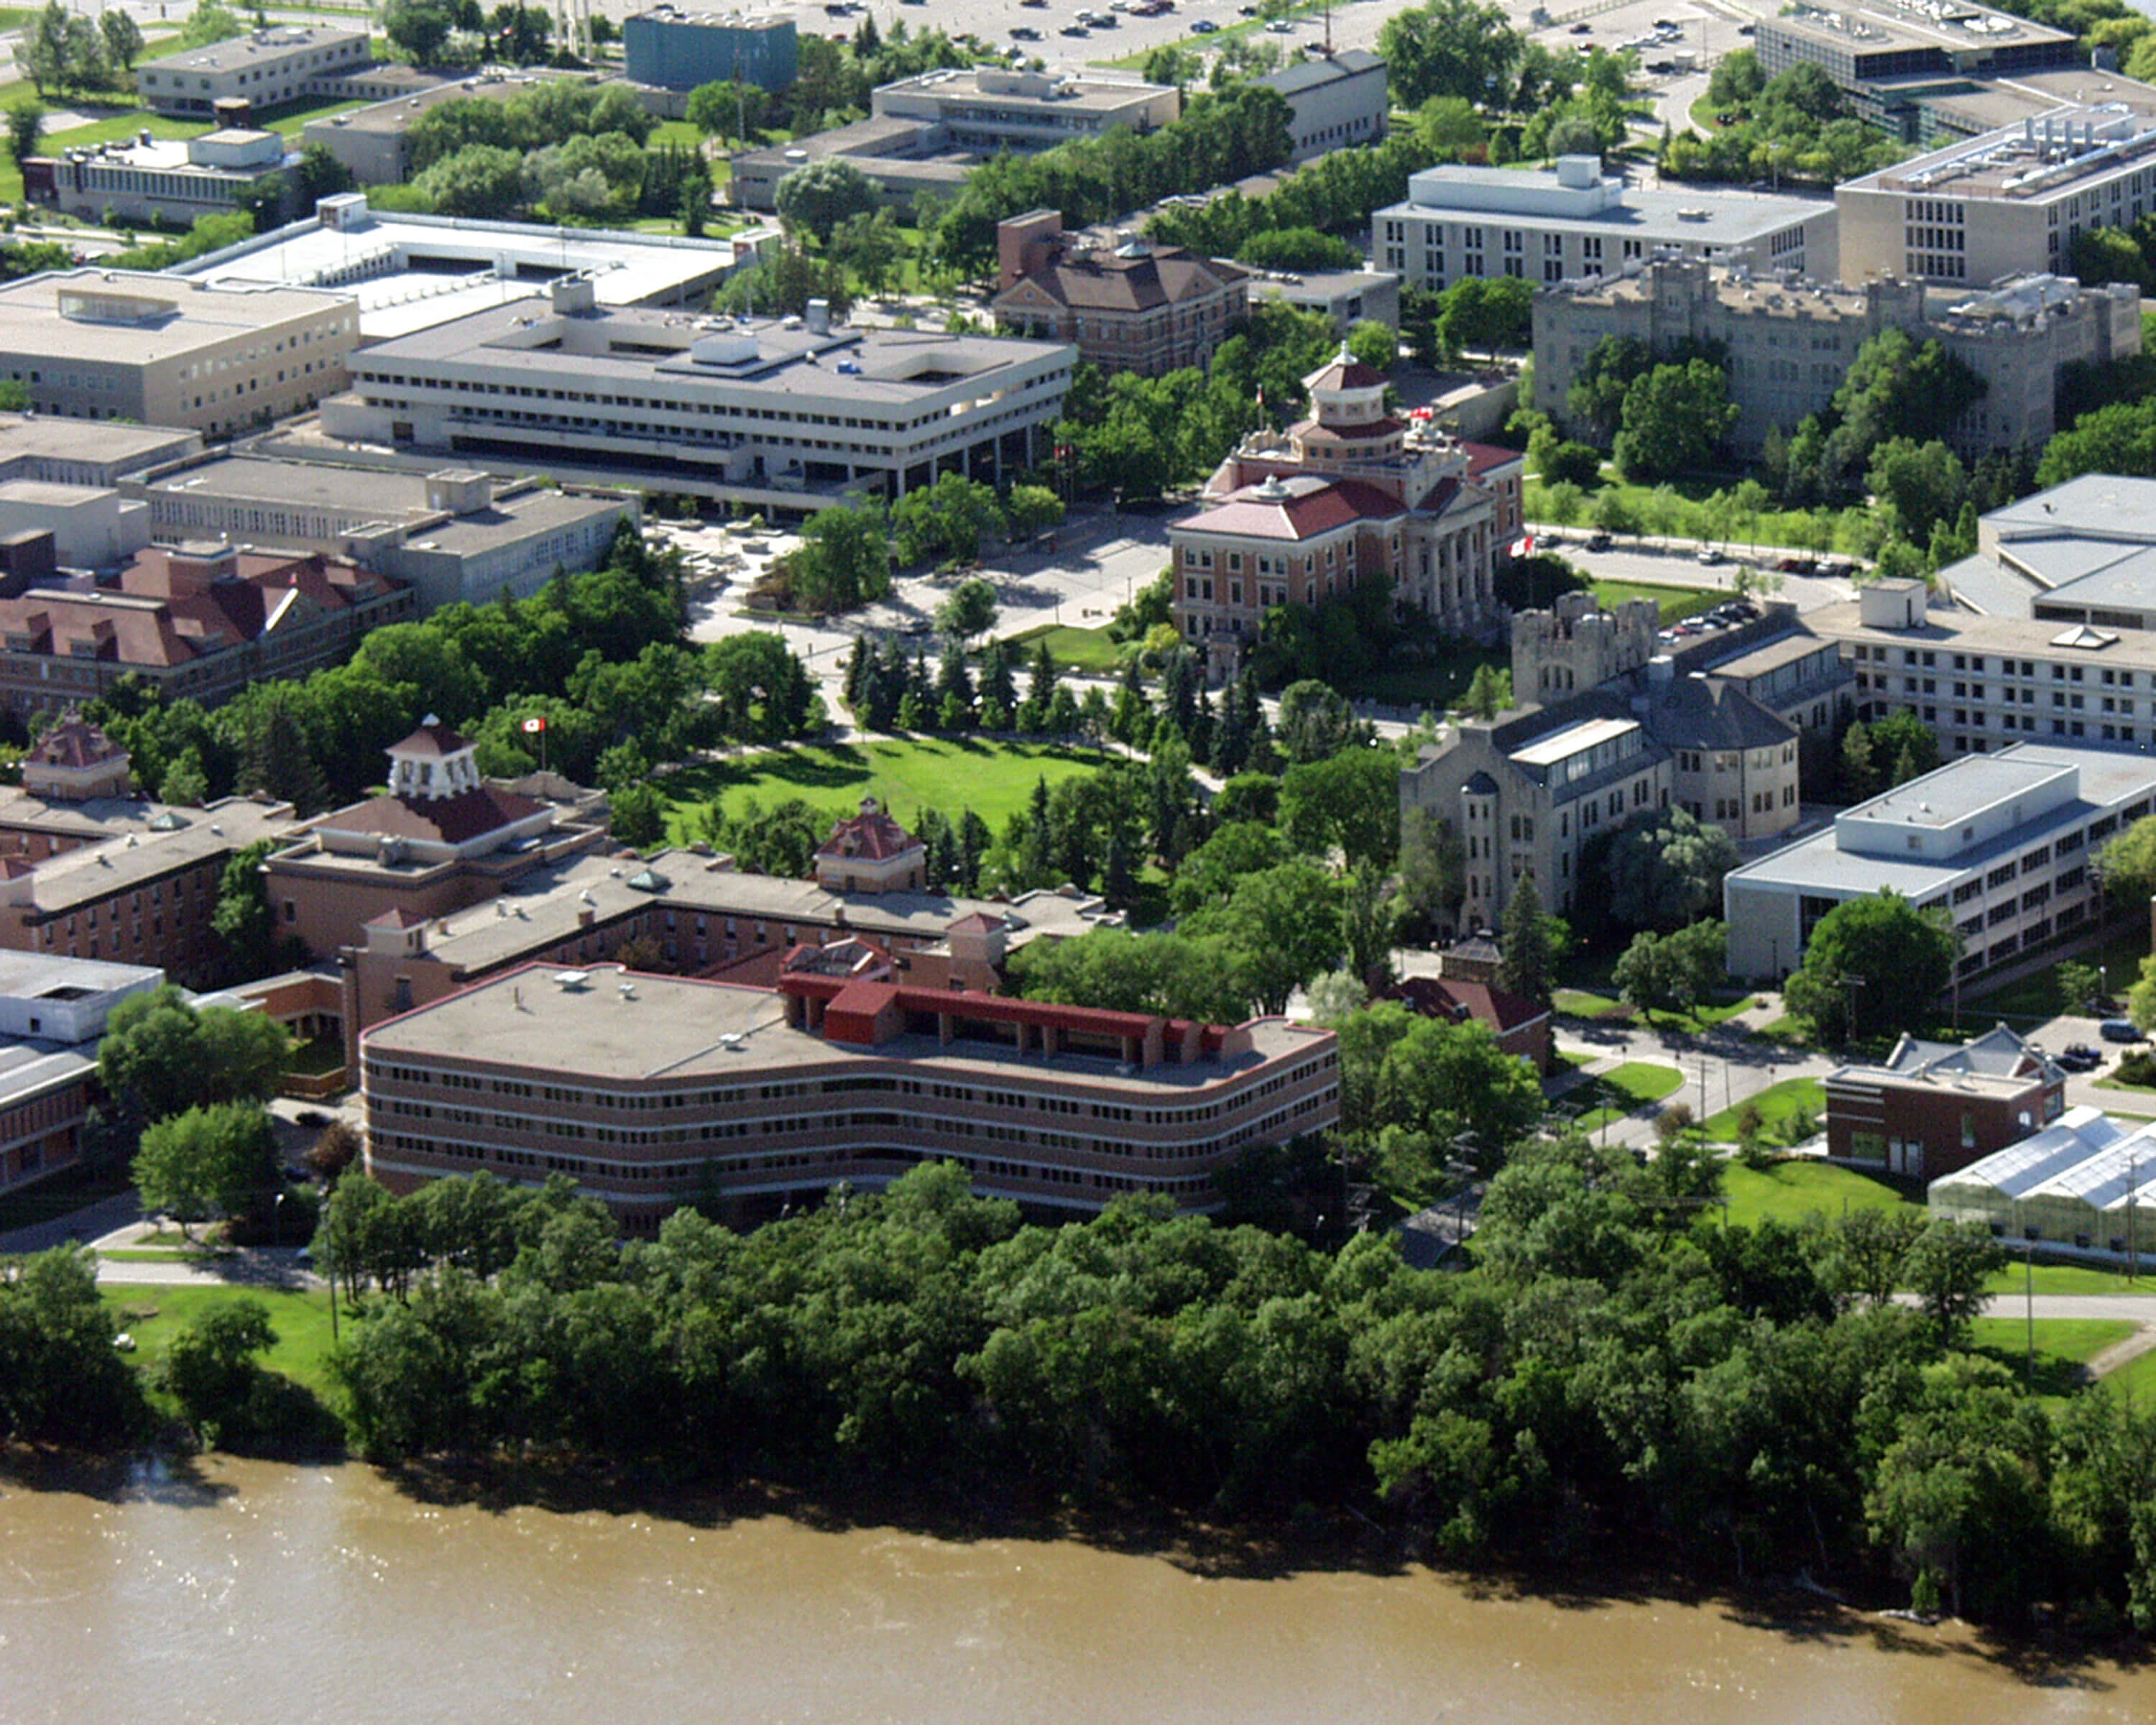 University of Manitoba: An enlightening education for financial aspirants